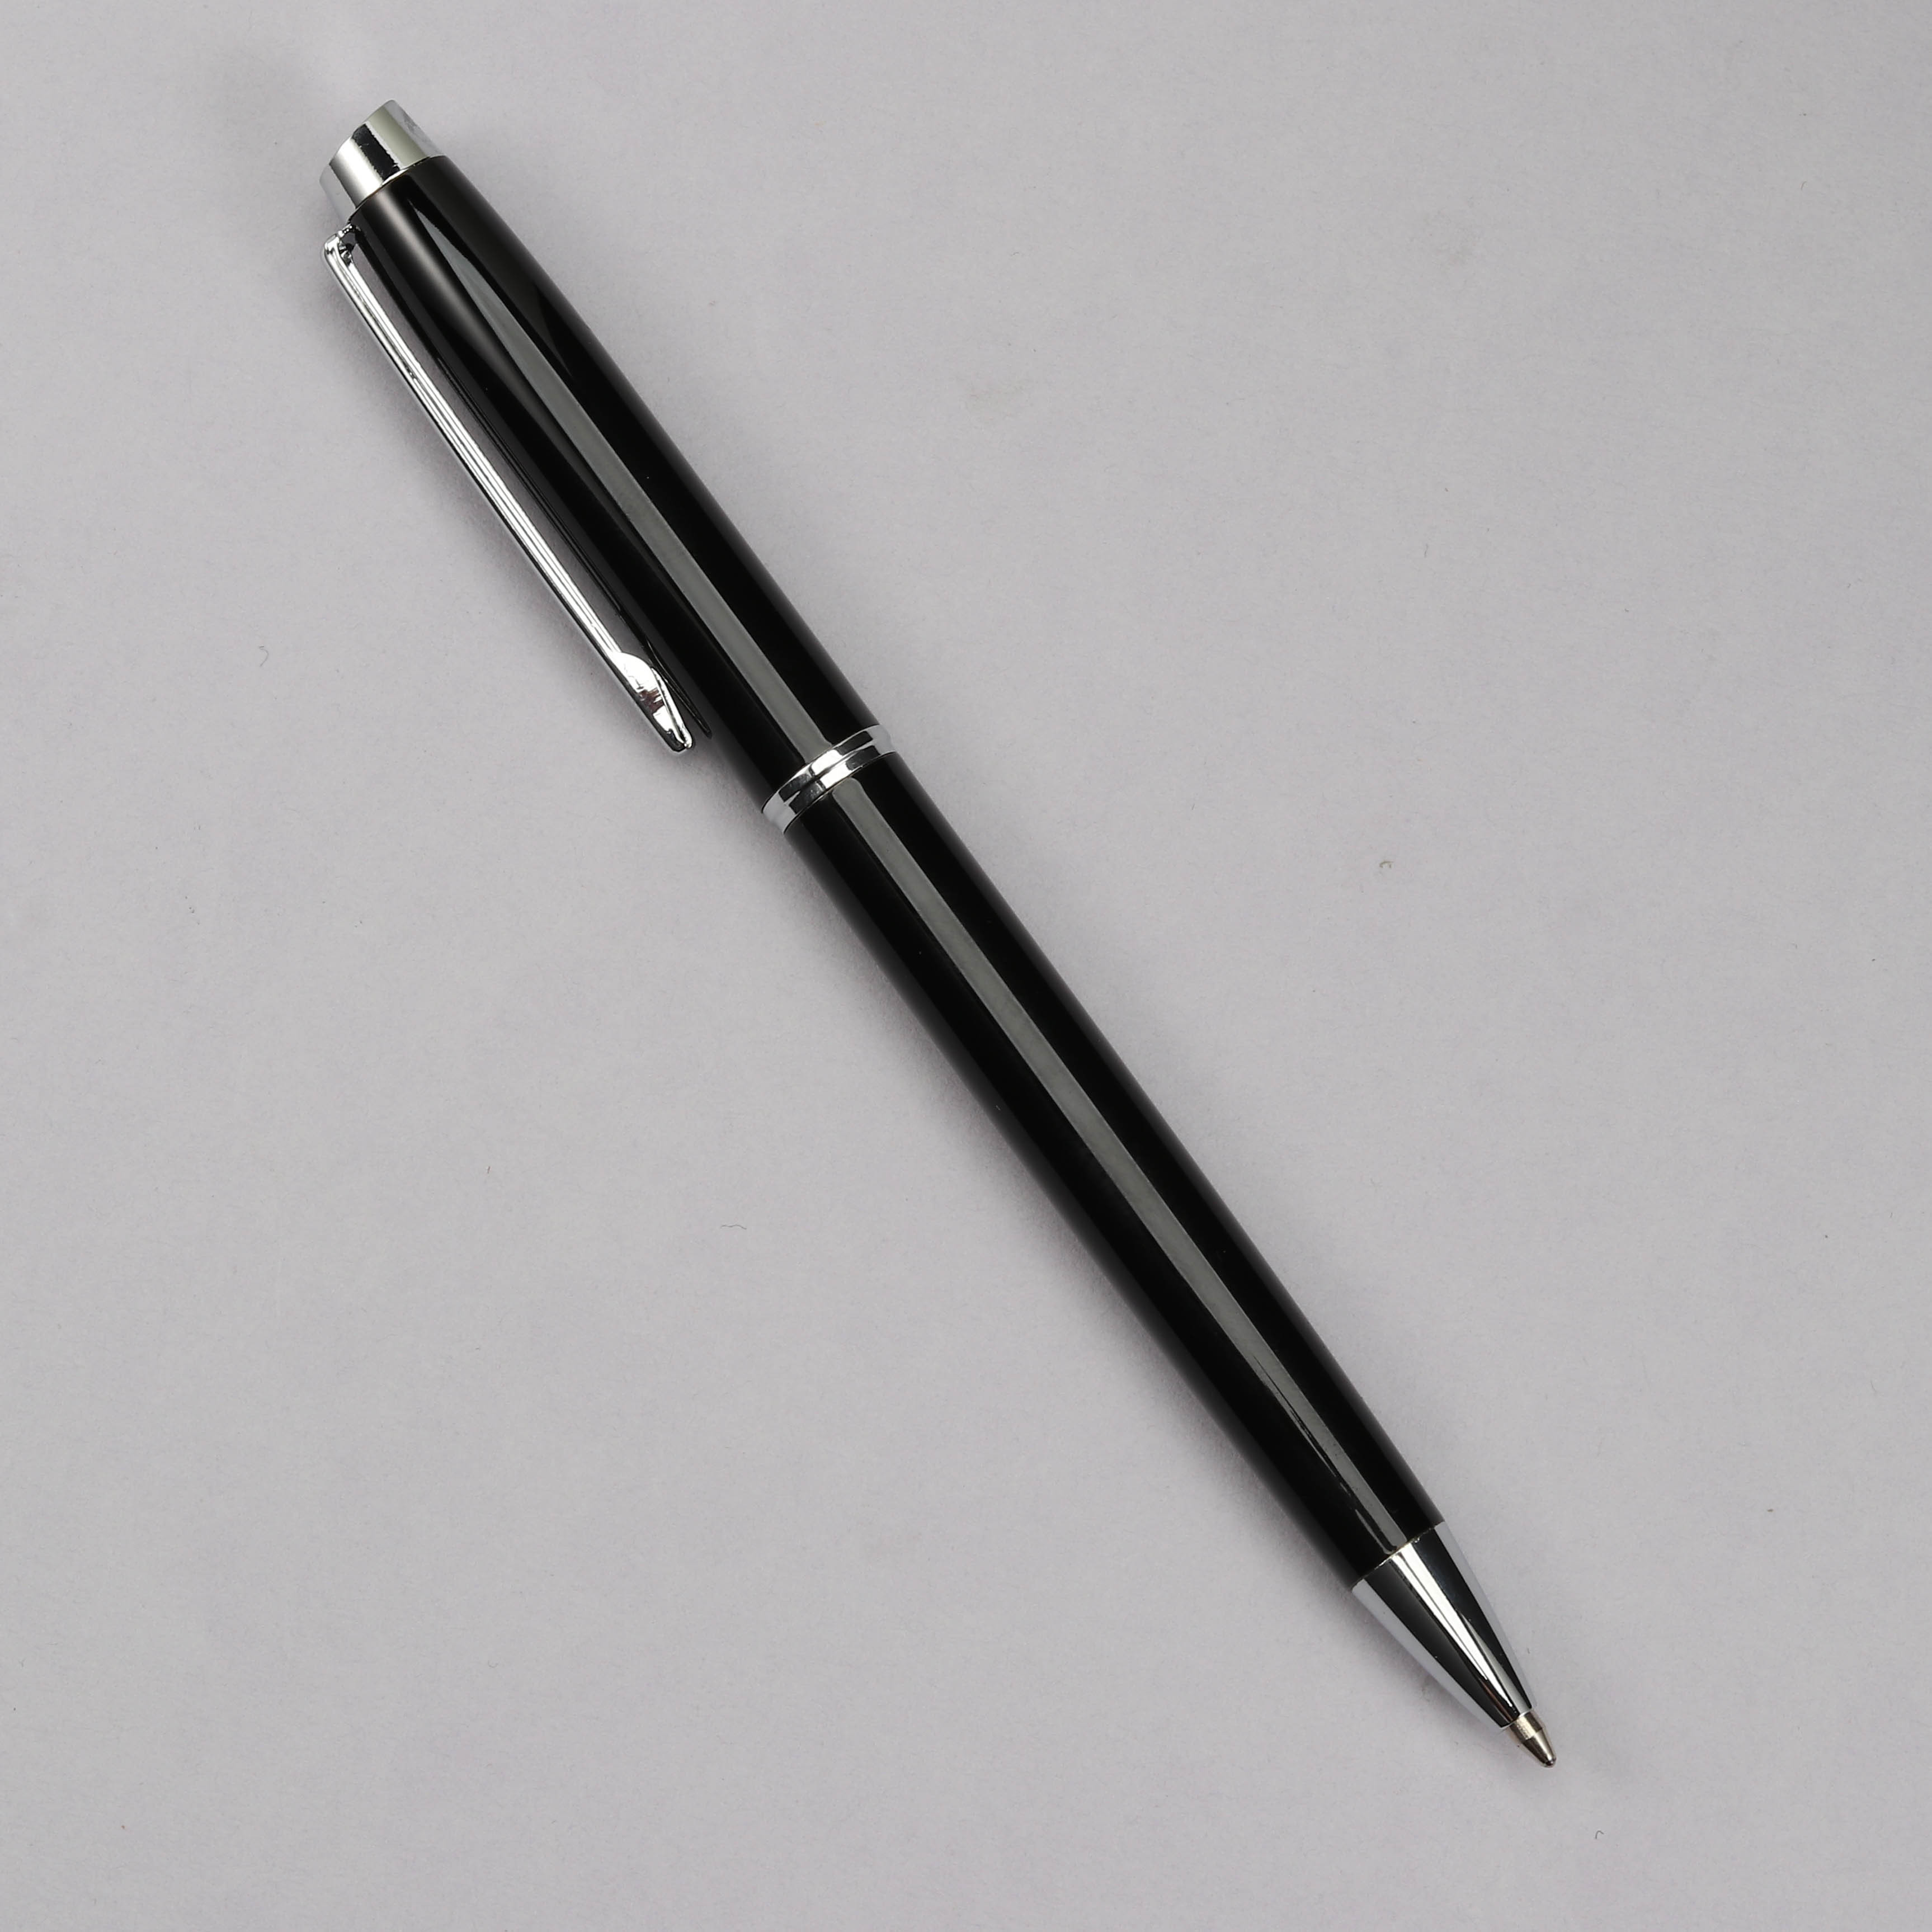 10pcs Ballpoint Pen Medium Work Pen With Super Soft Grip Ball Pen